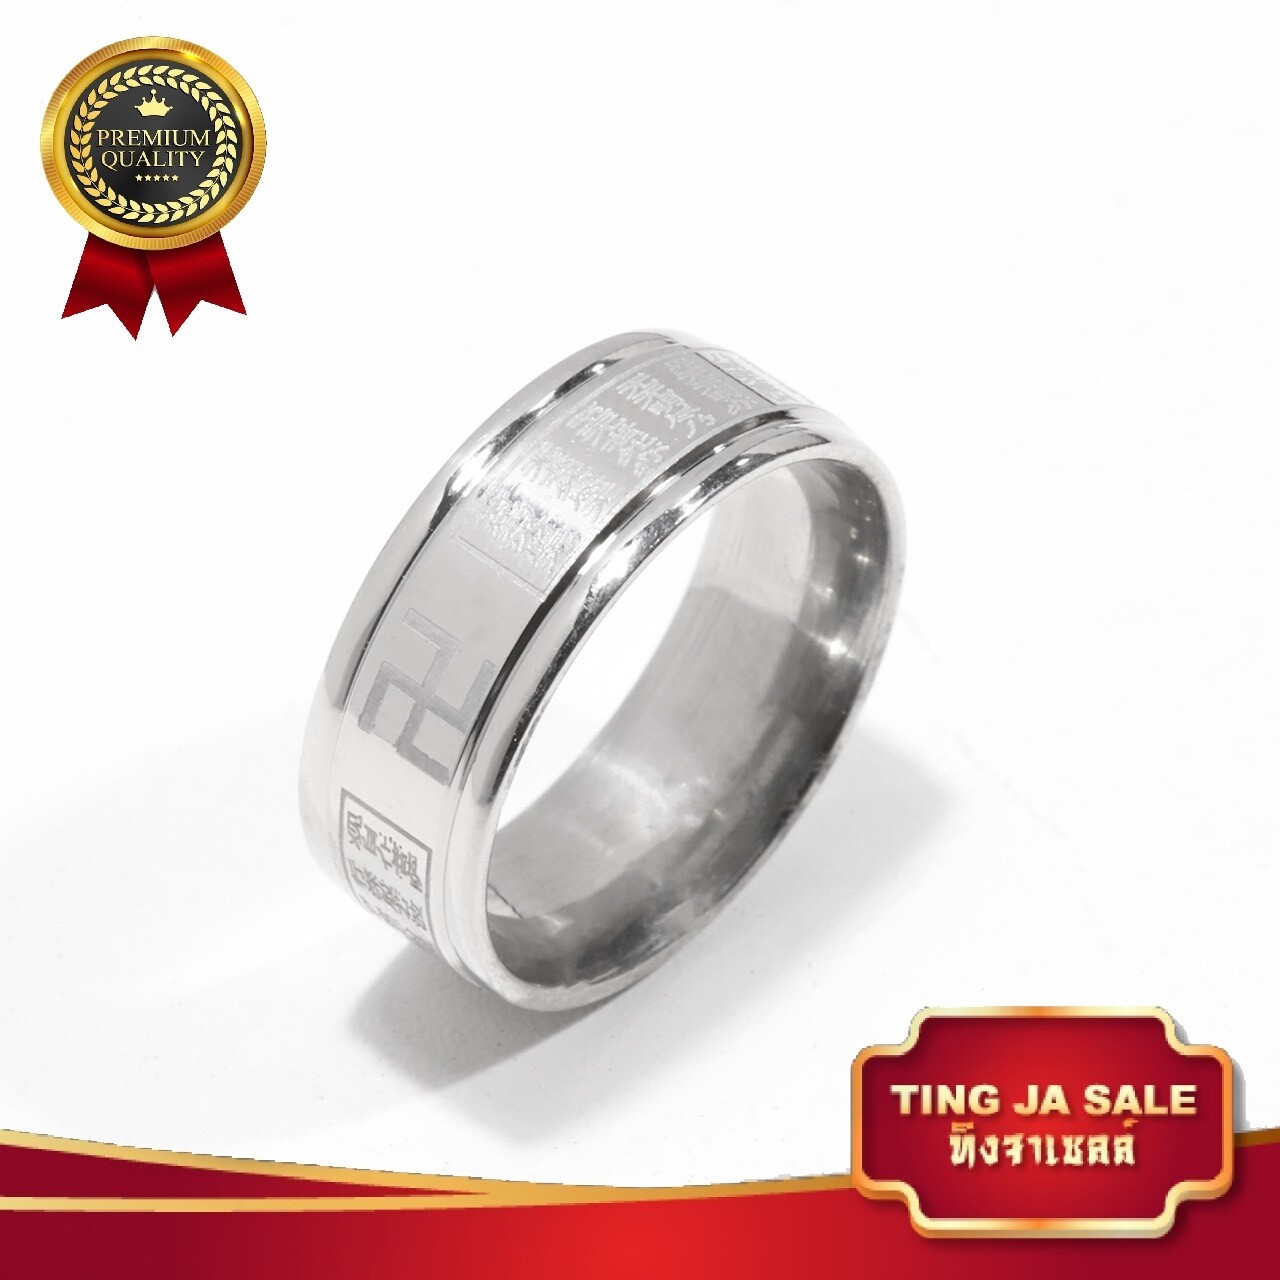 แหวน แหวนสเเตนเลส แหวนหฤทัยสูตร ใส่ทั้งชาติก็ไม่ลอก แหวนเเฟชั่น ผิวแกะสลักอักษรสวยงาม สเเตนเลสเเท้ 100% รุ่น XM-06